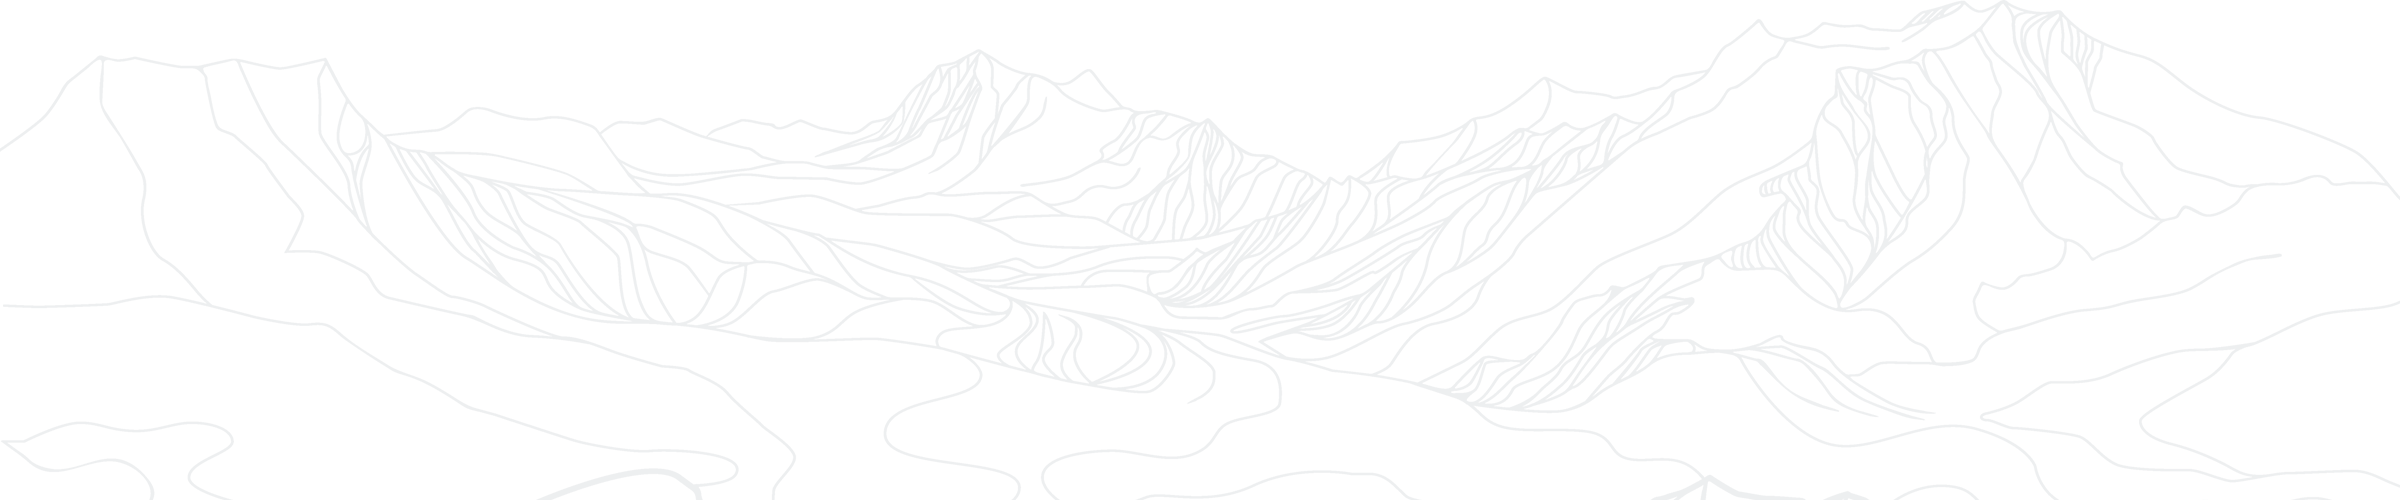 mountain illustration footer